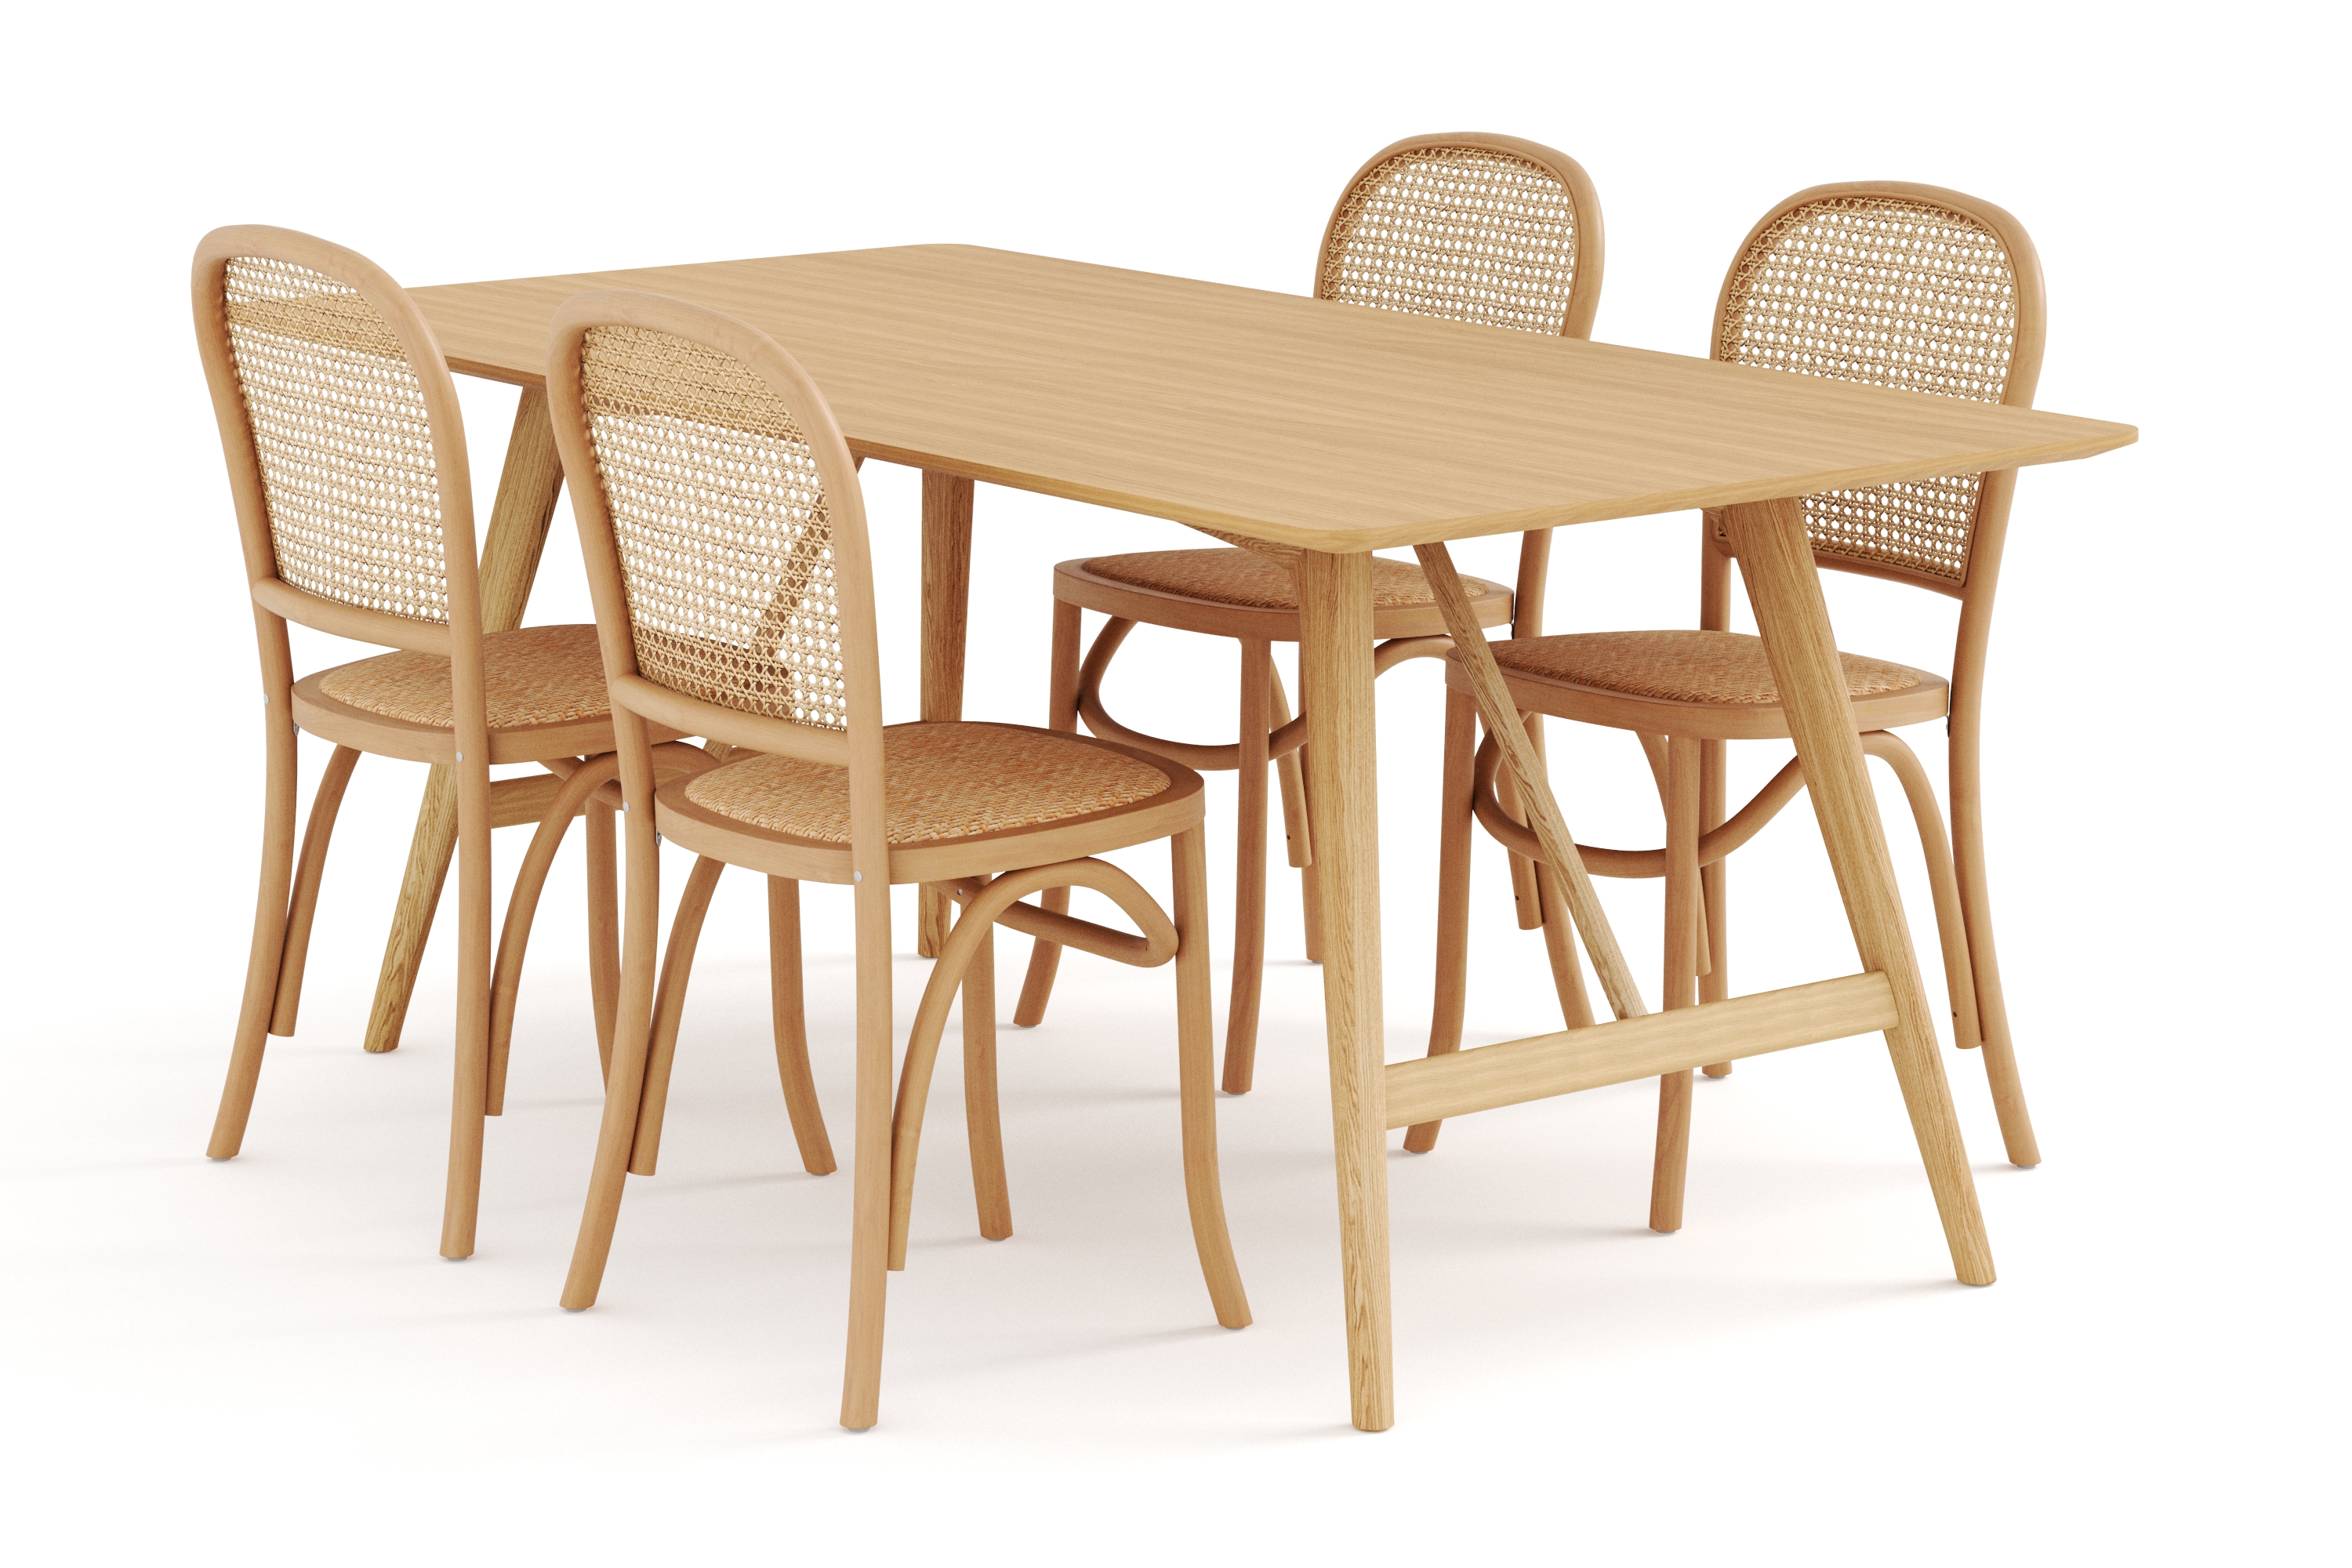 Ruokapöytä Skagana 180 cm  4 Degors tuolia - Luonnonväri